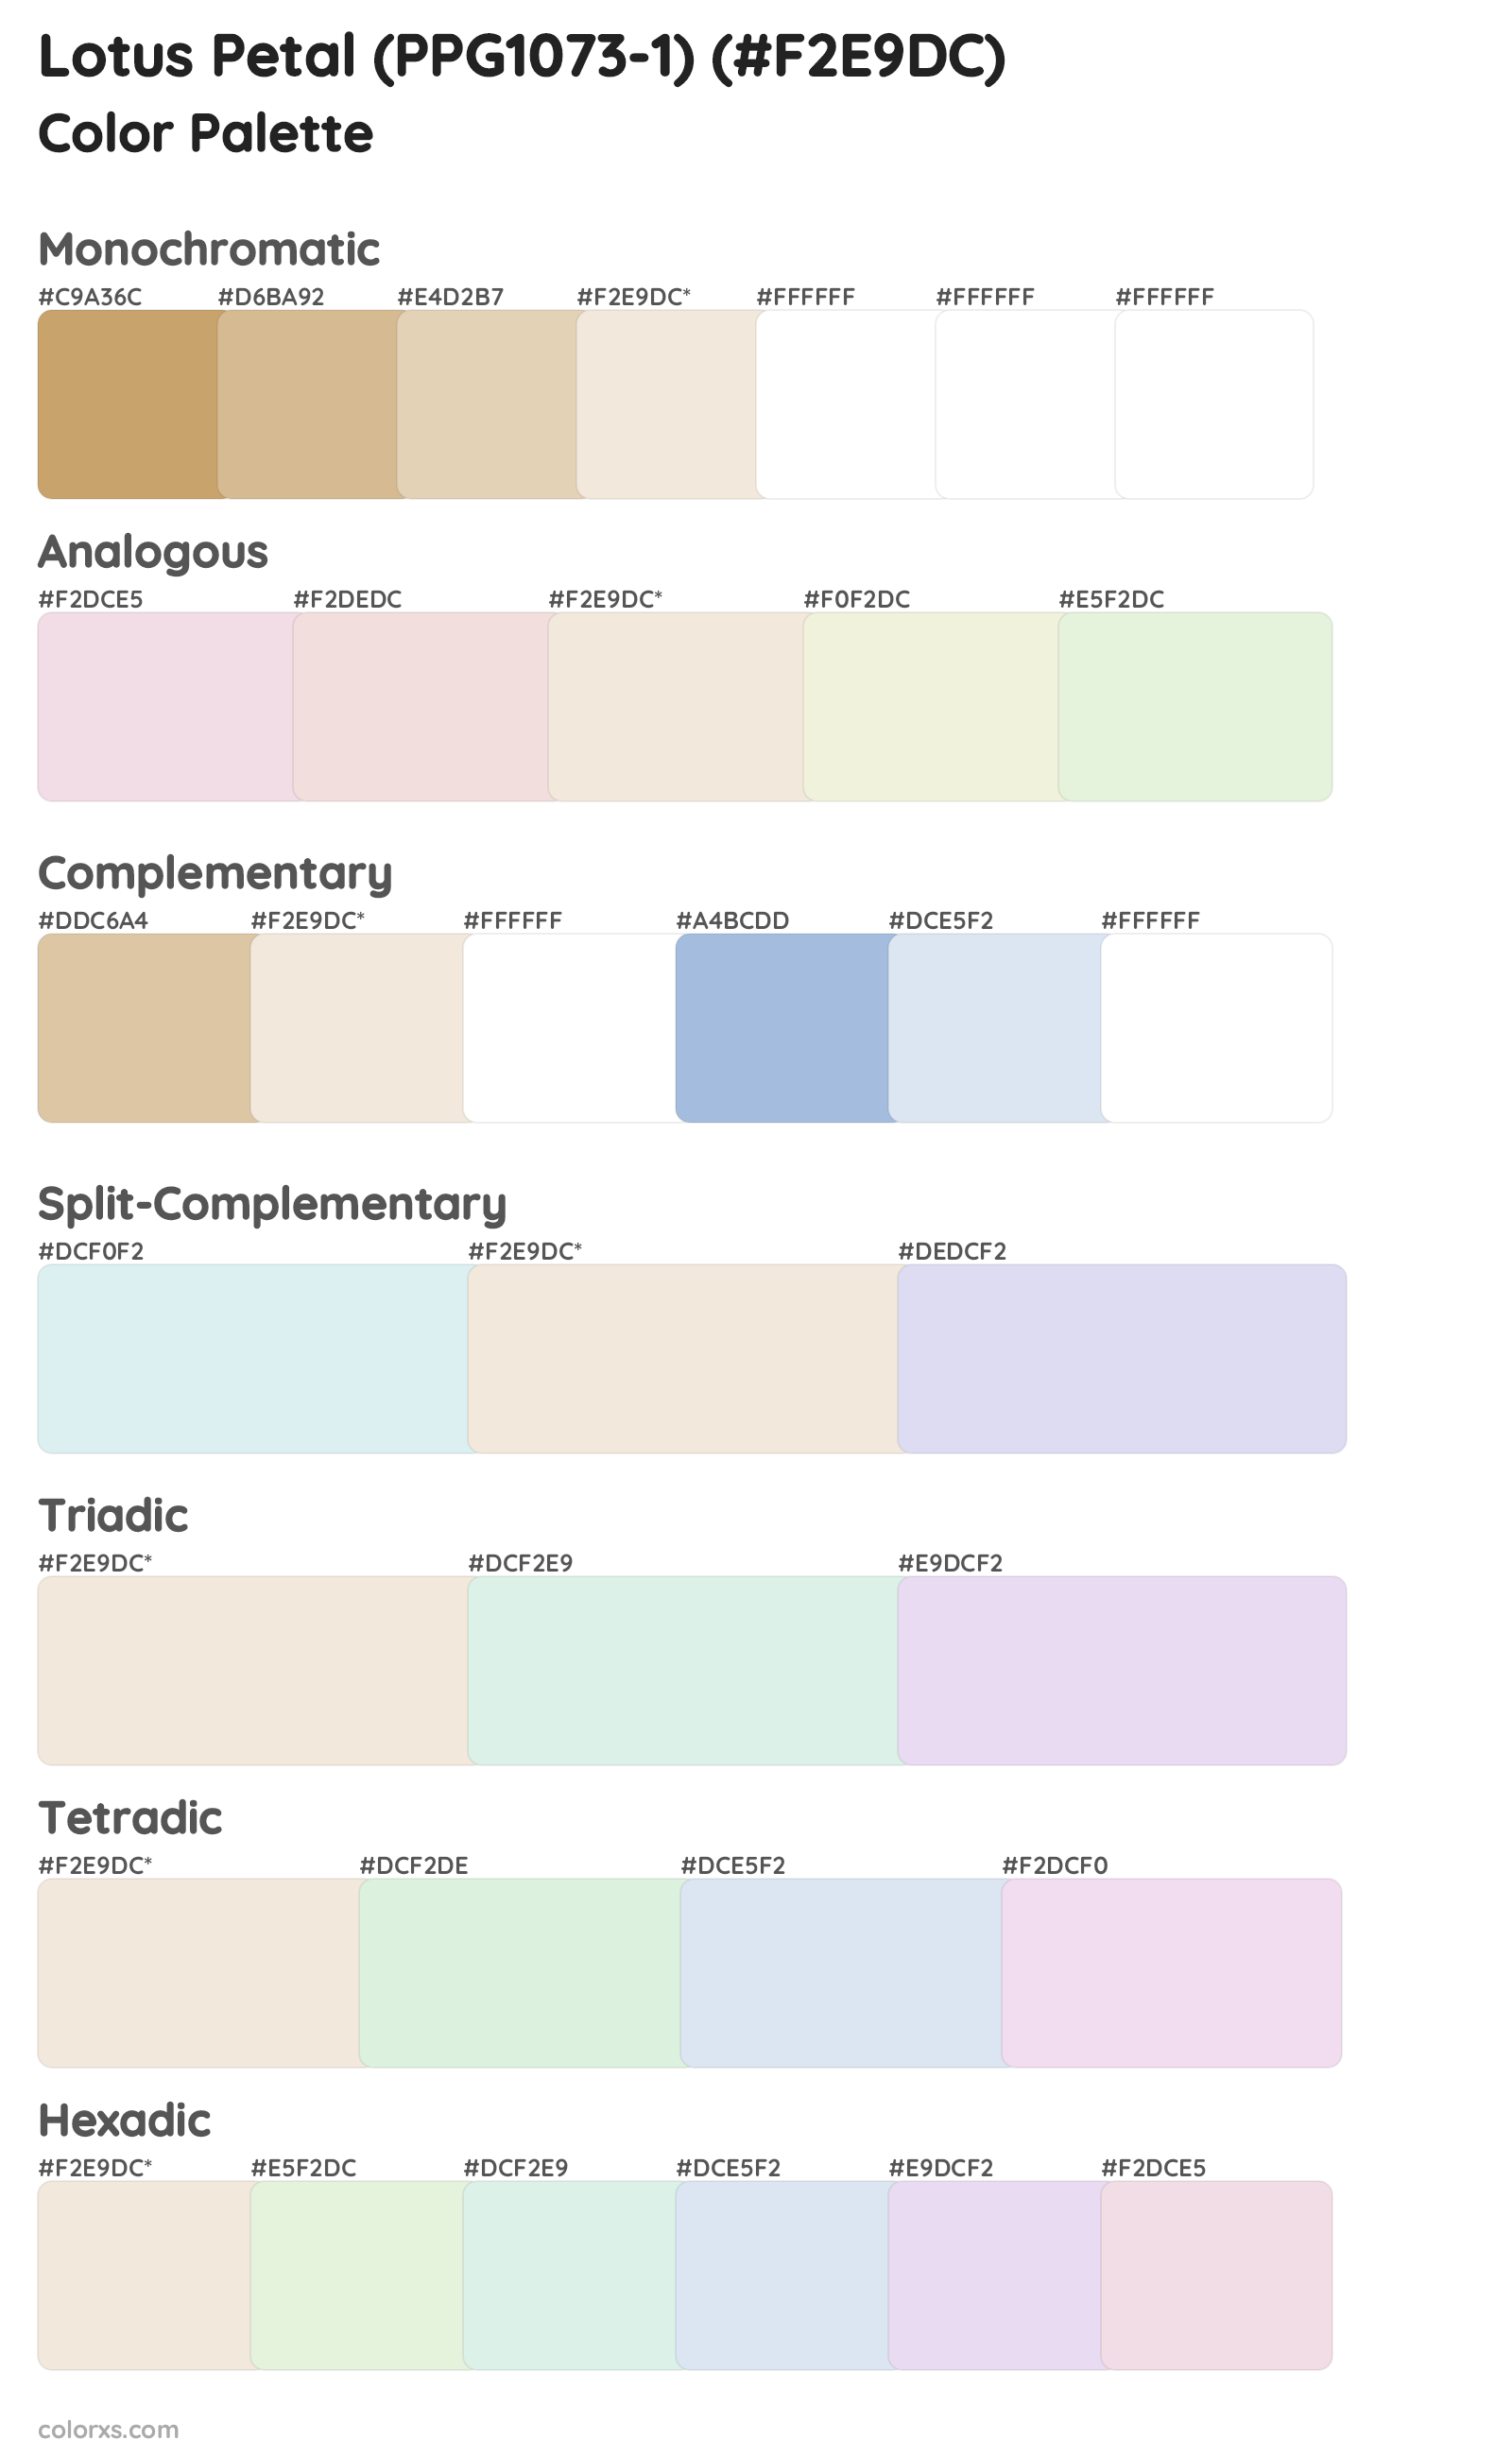 Lotus Petal (PPG1073-1) Color Scheme Palettes